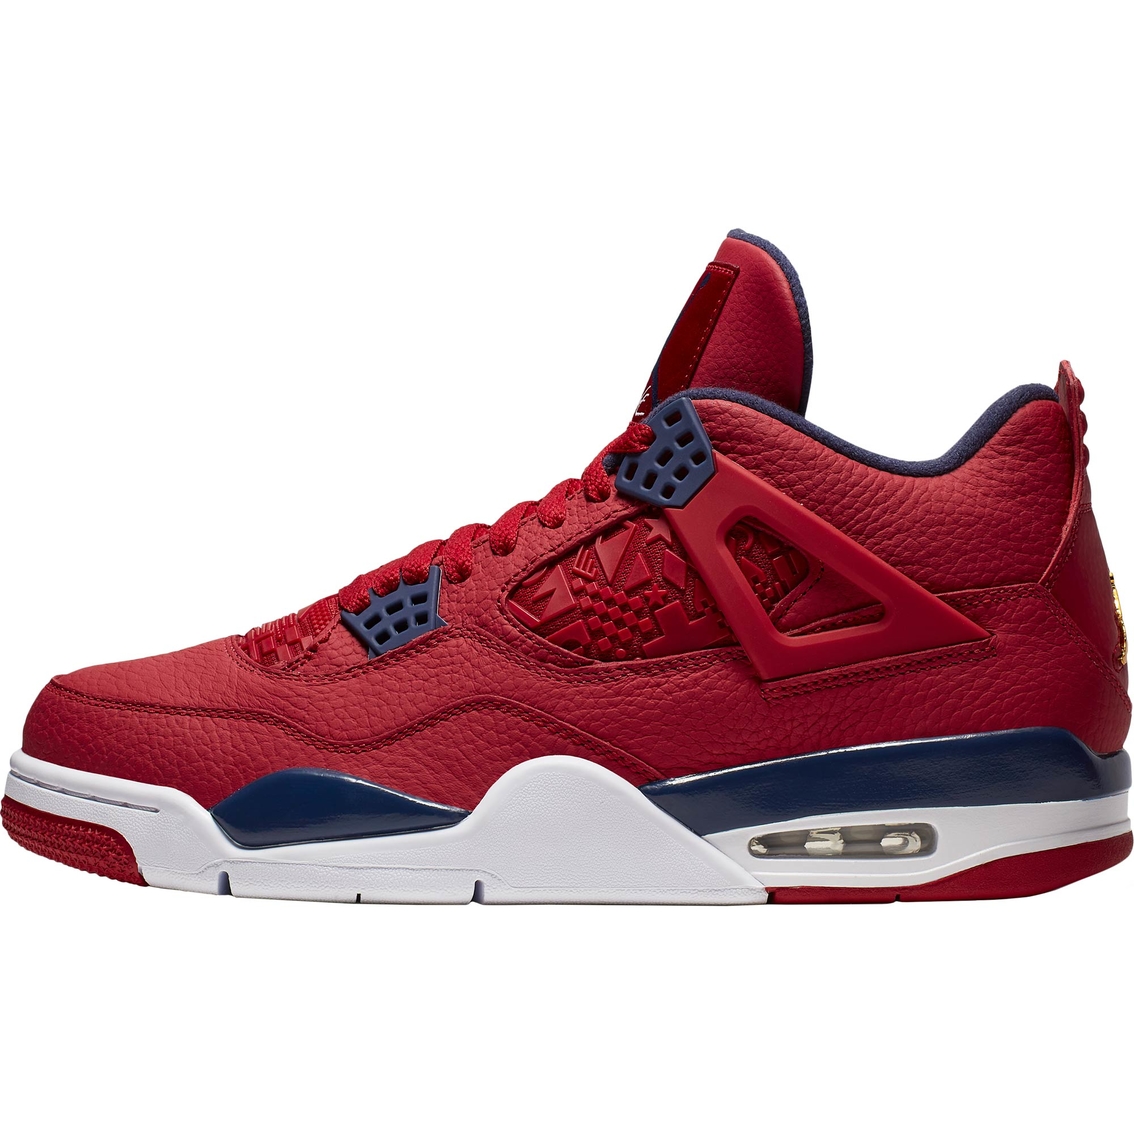 Air Jordan Men's Retro 4 Basketball Shoes - Image 2 of 7